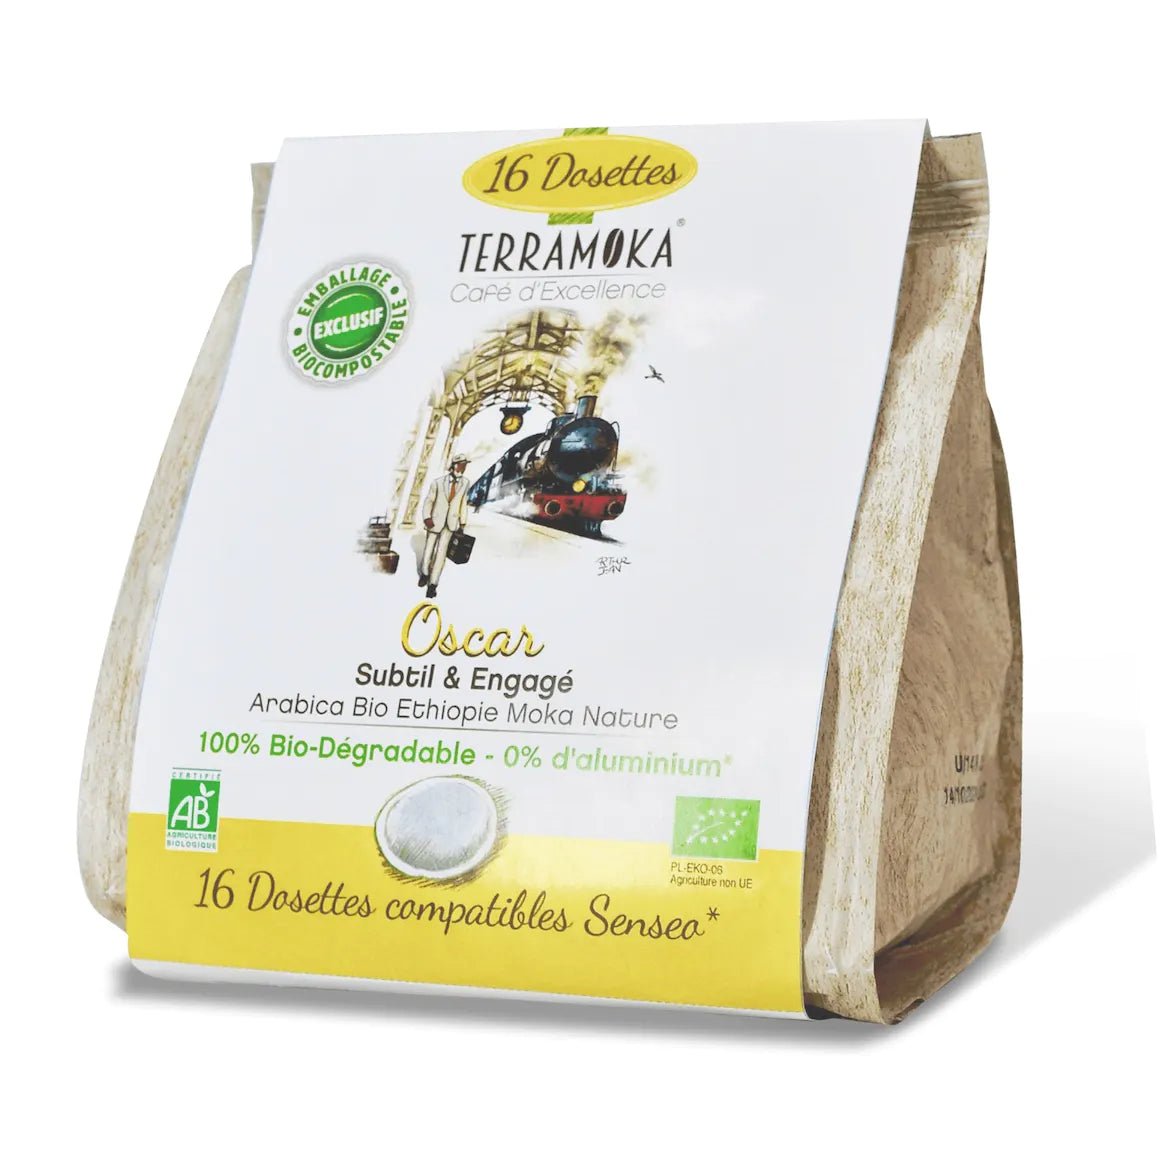 TERRAMOKA 16 dosettes biodegradables & compatibles Senseo - Oscar - goobio-and-zen